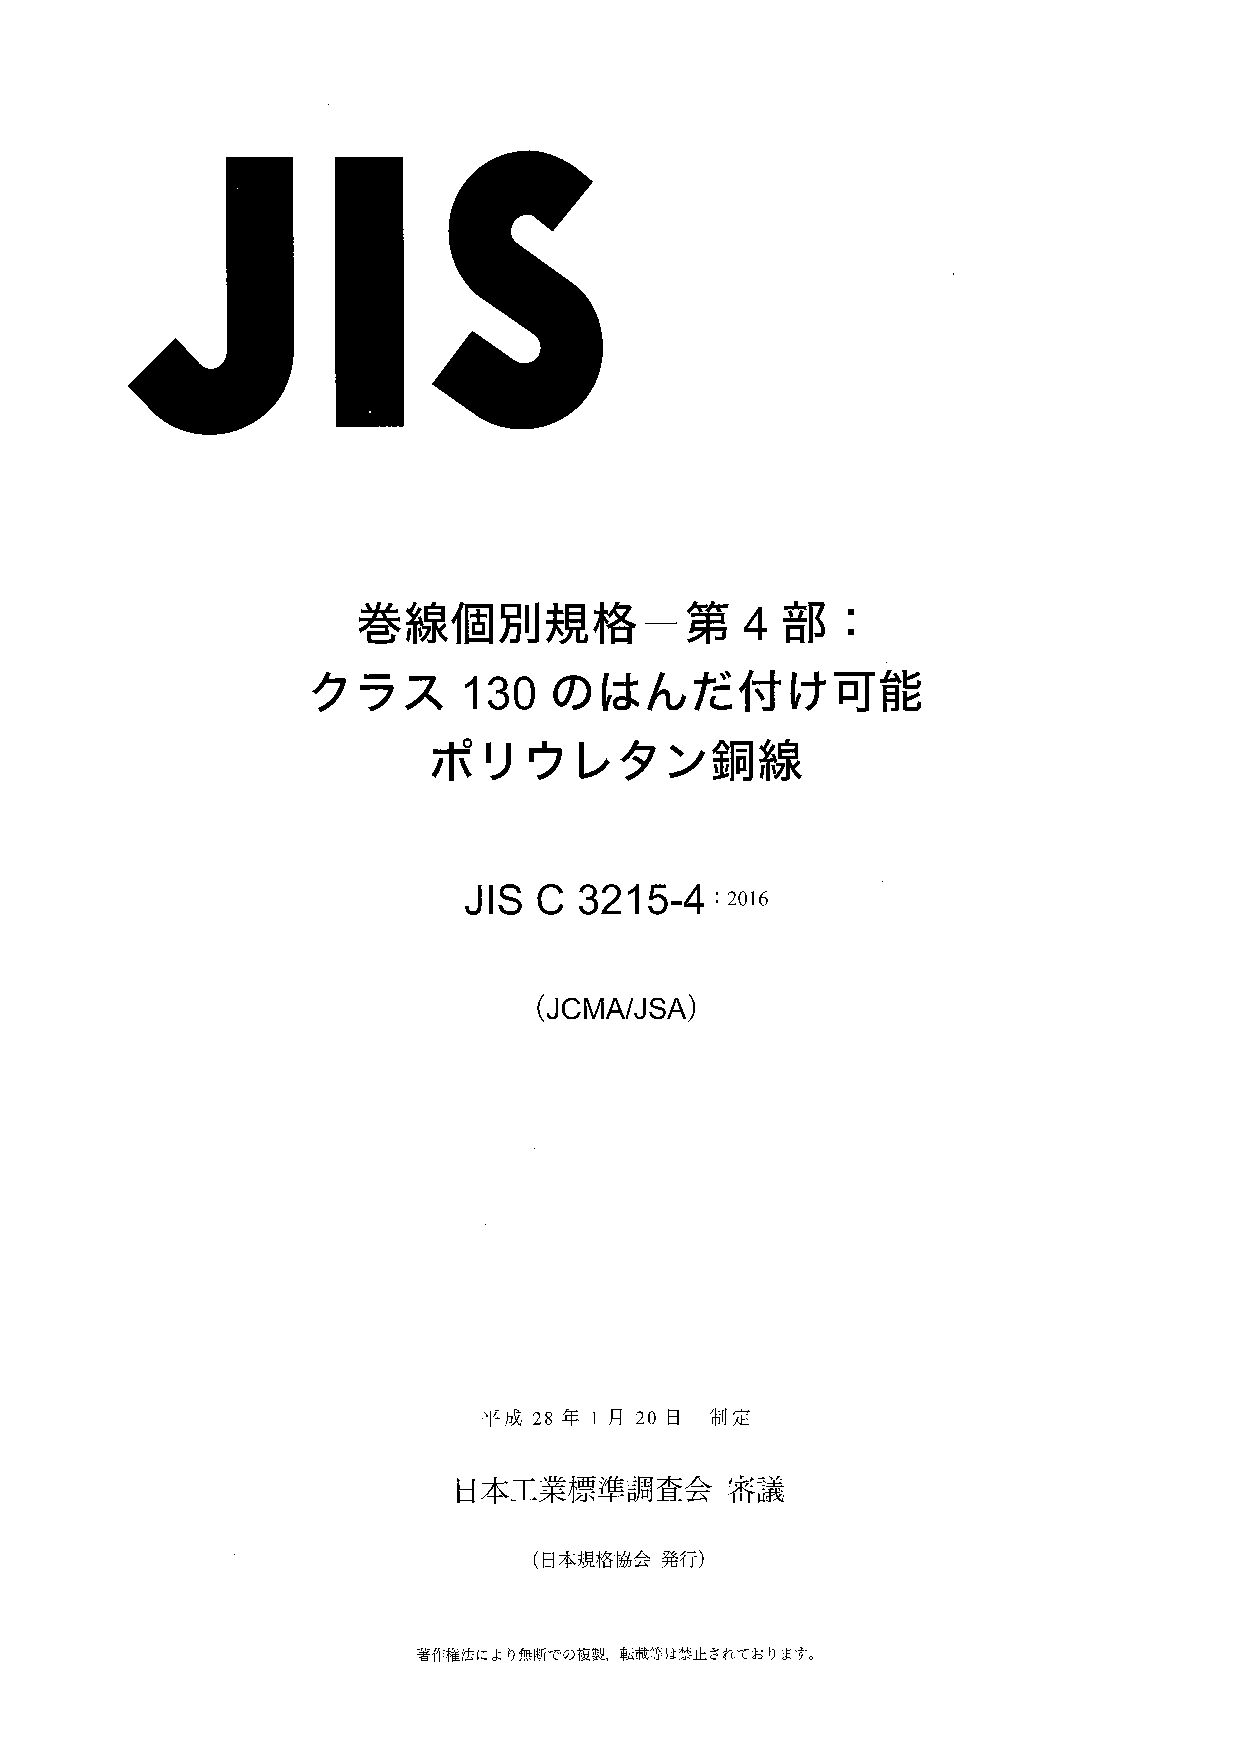 JIS C 3215-4:2016